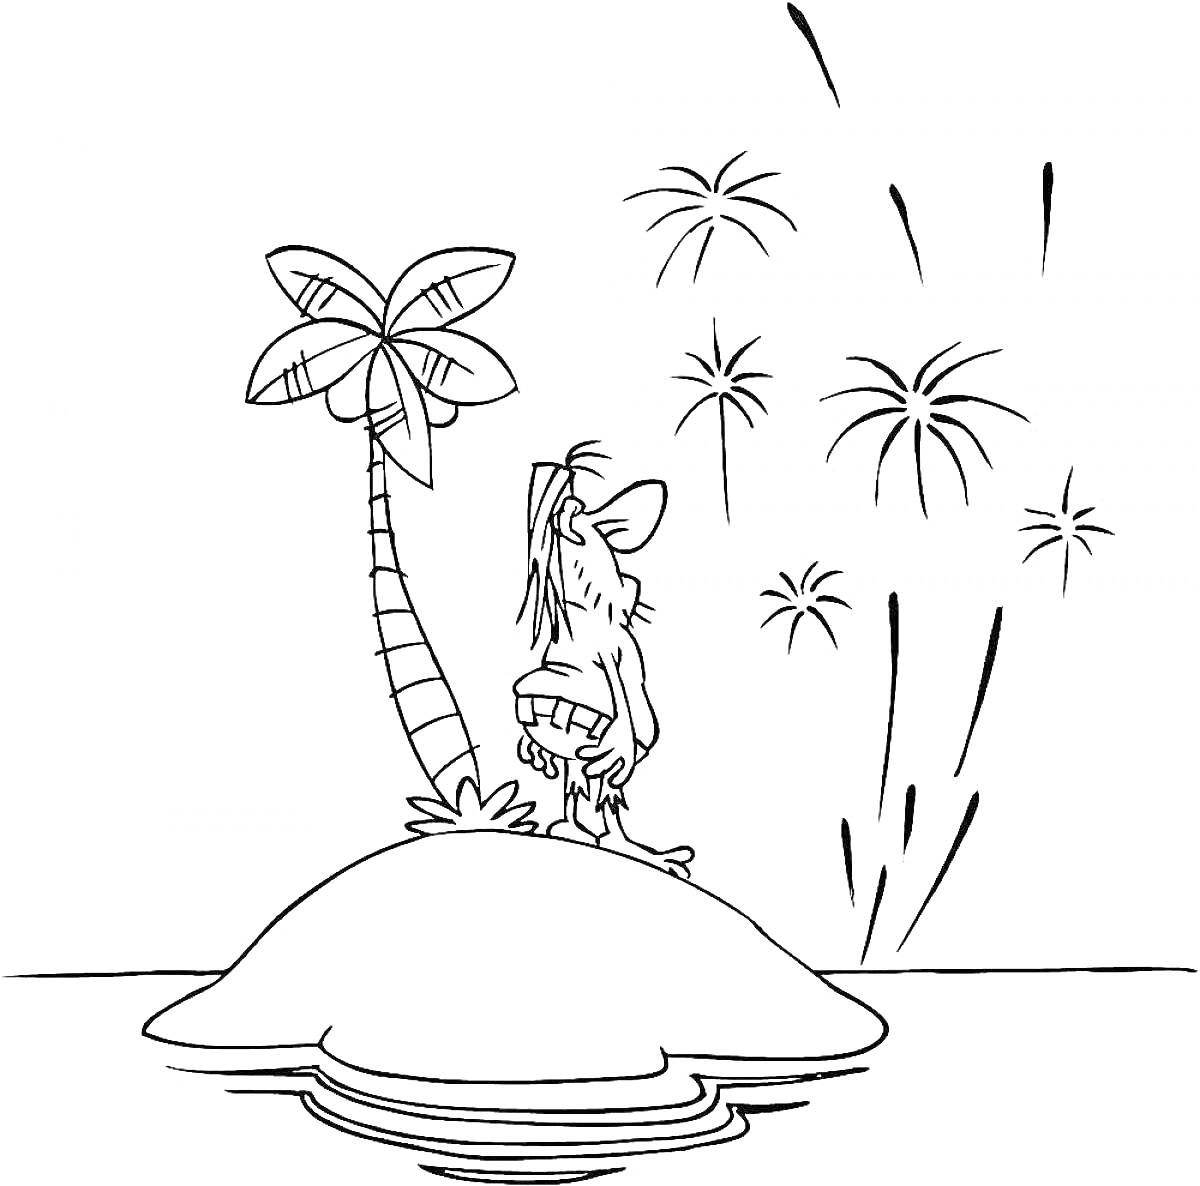 Пират на острове с пальмой, наблюдающий фейерверк над водой